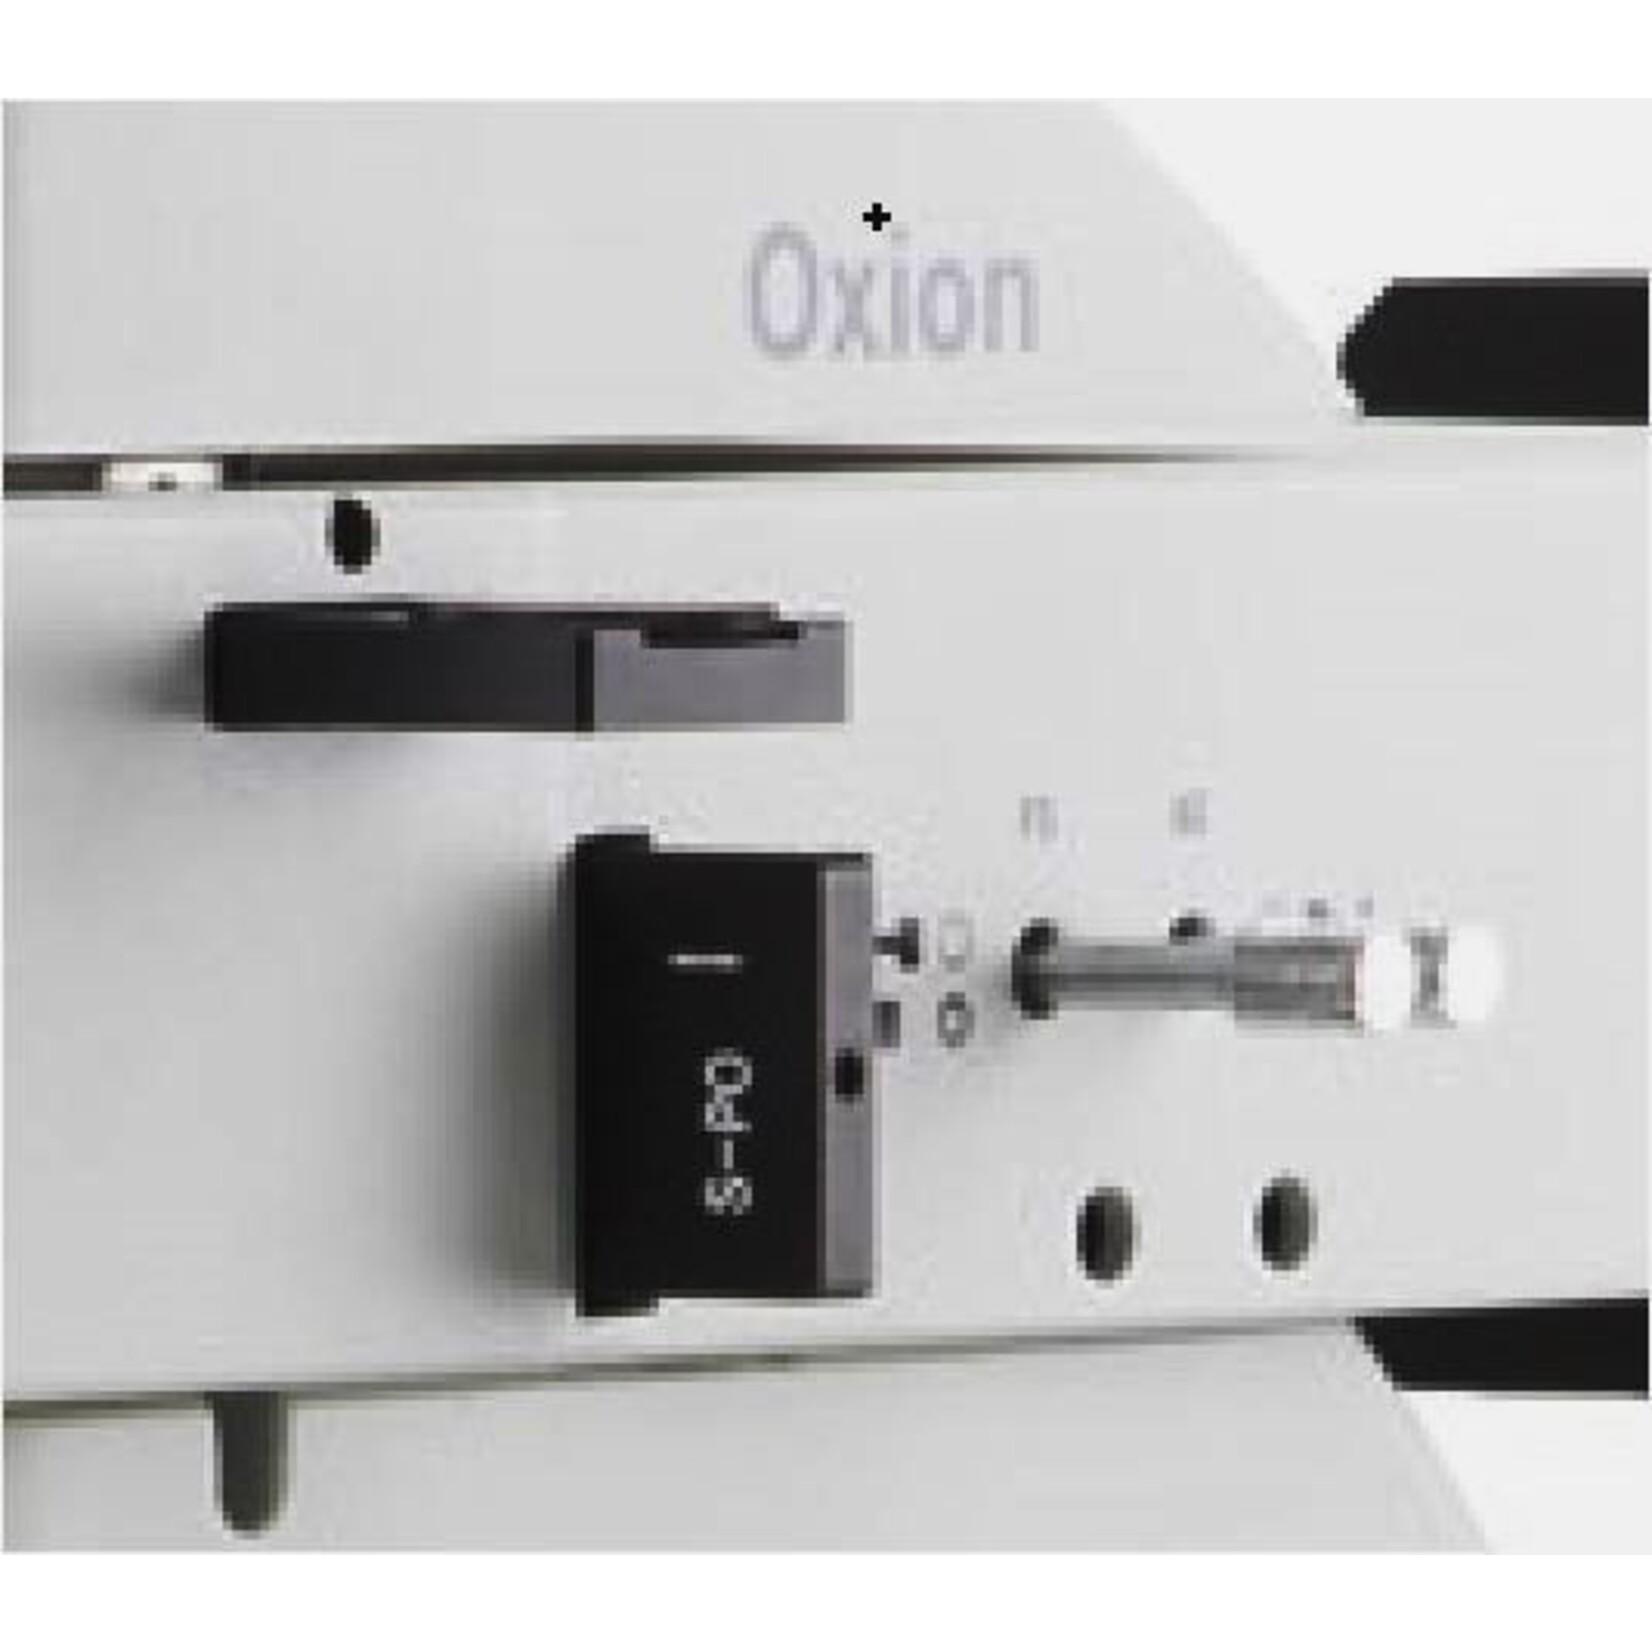 Microscopio industrial Oxion para micrografías